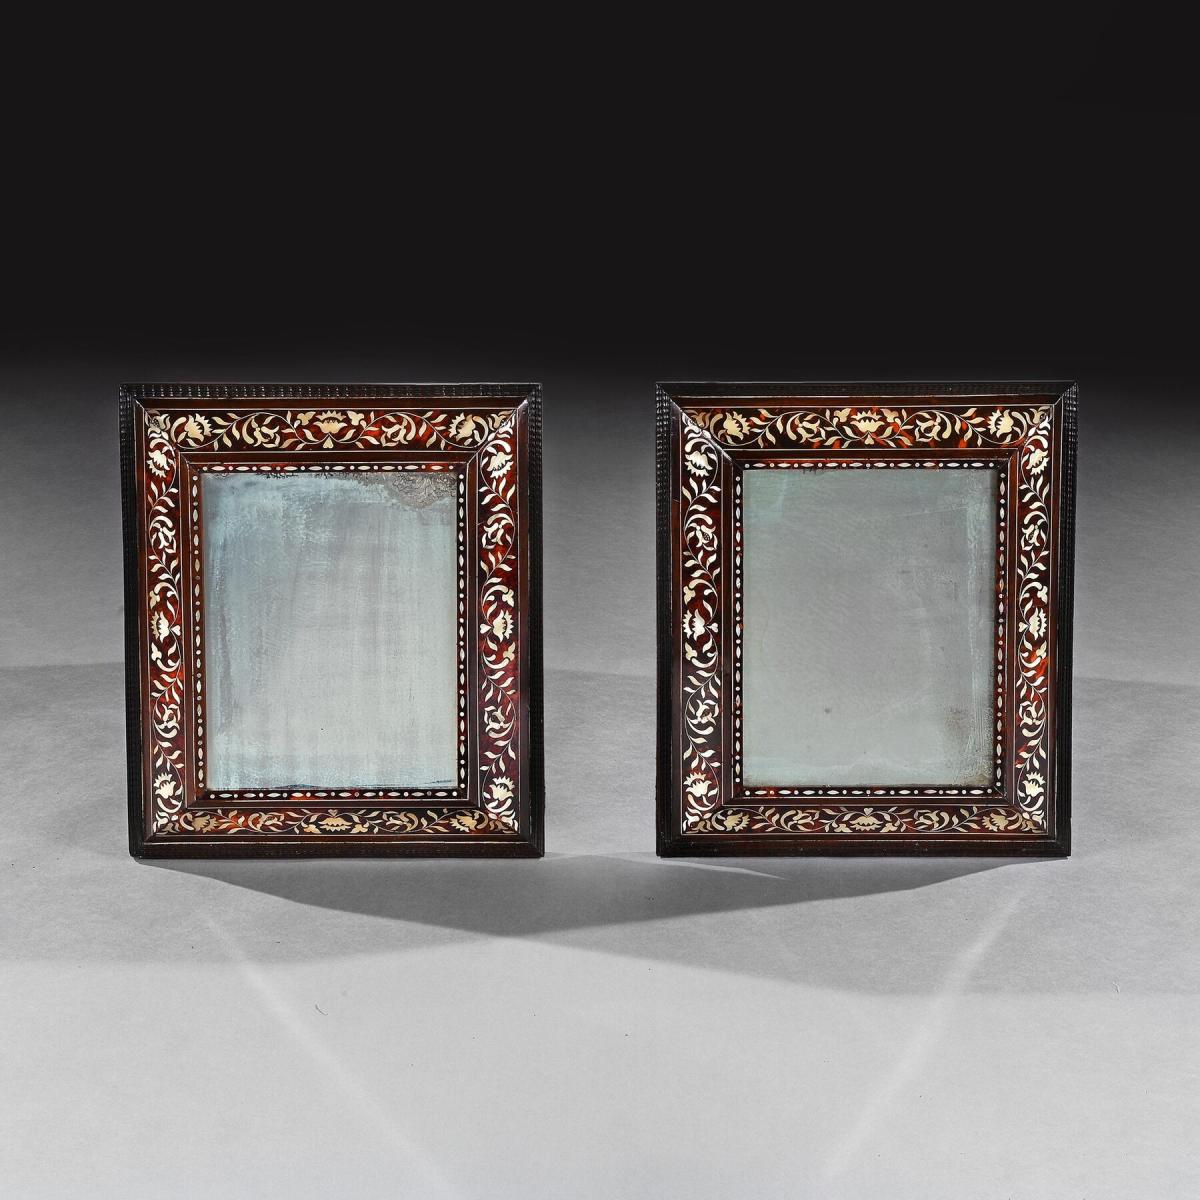  Spanish Colonial 18th Century Tortoiseshell Enconchado Mirrors, Peruvian or Mexican